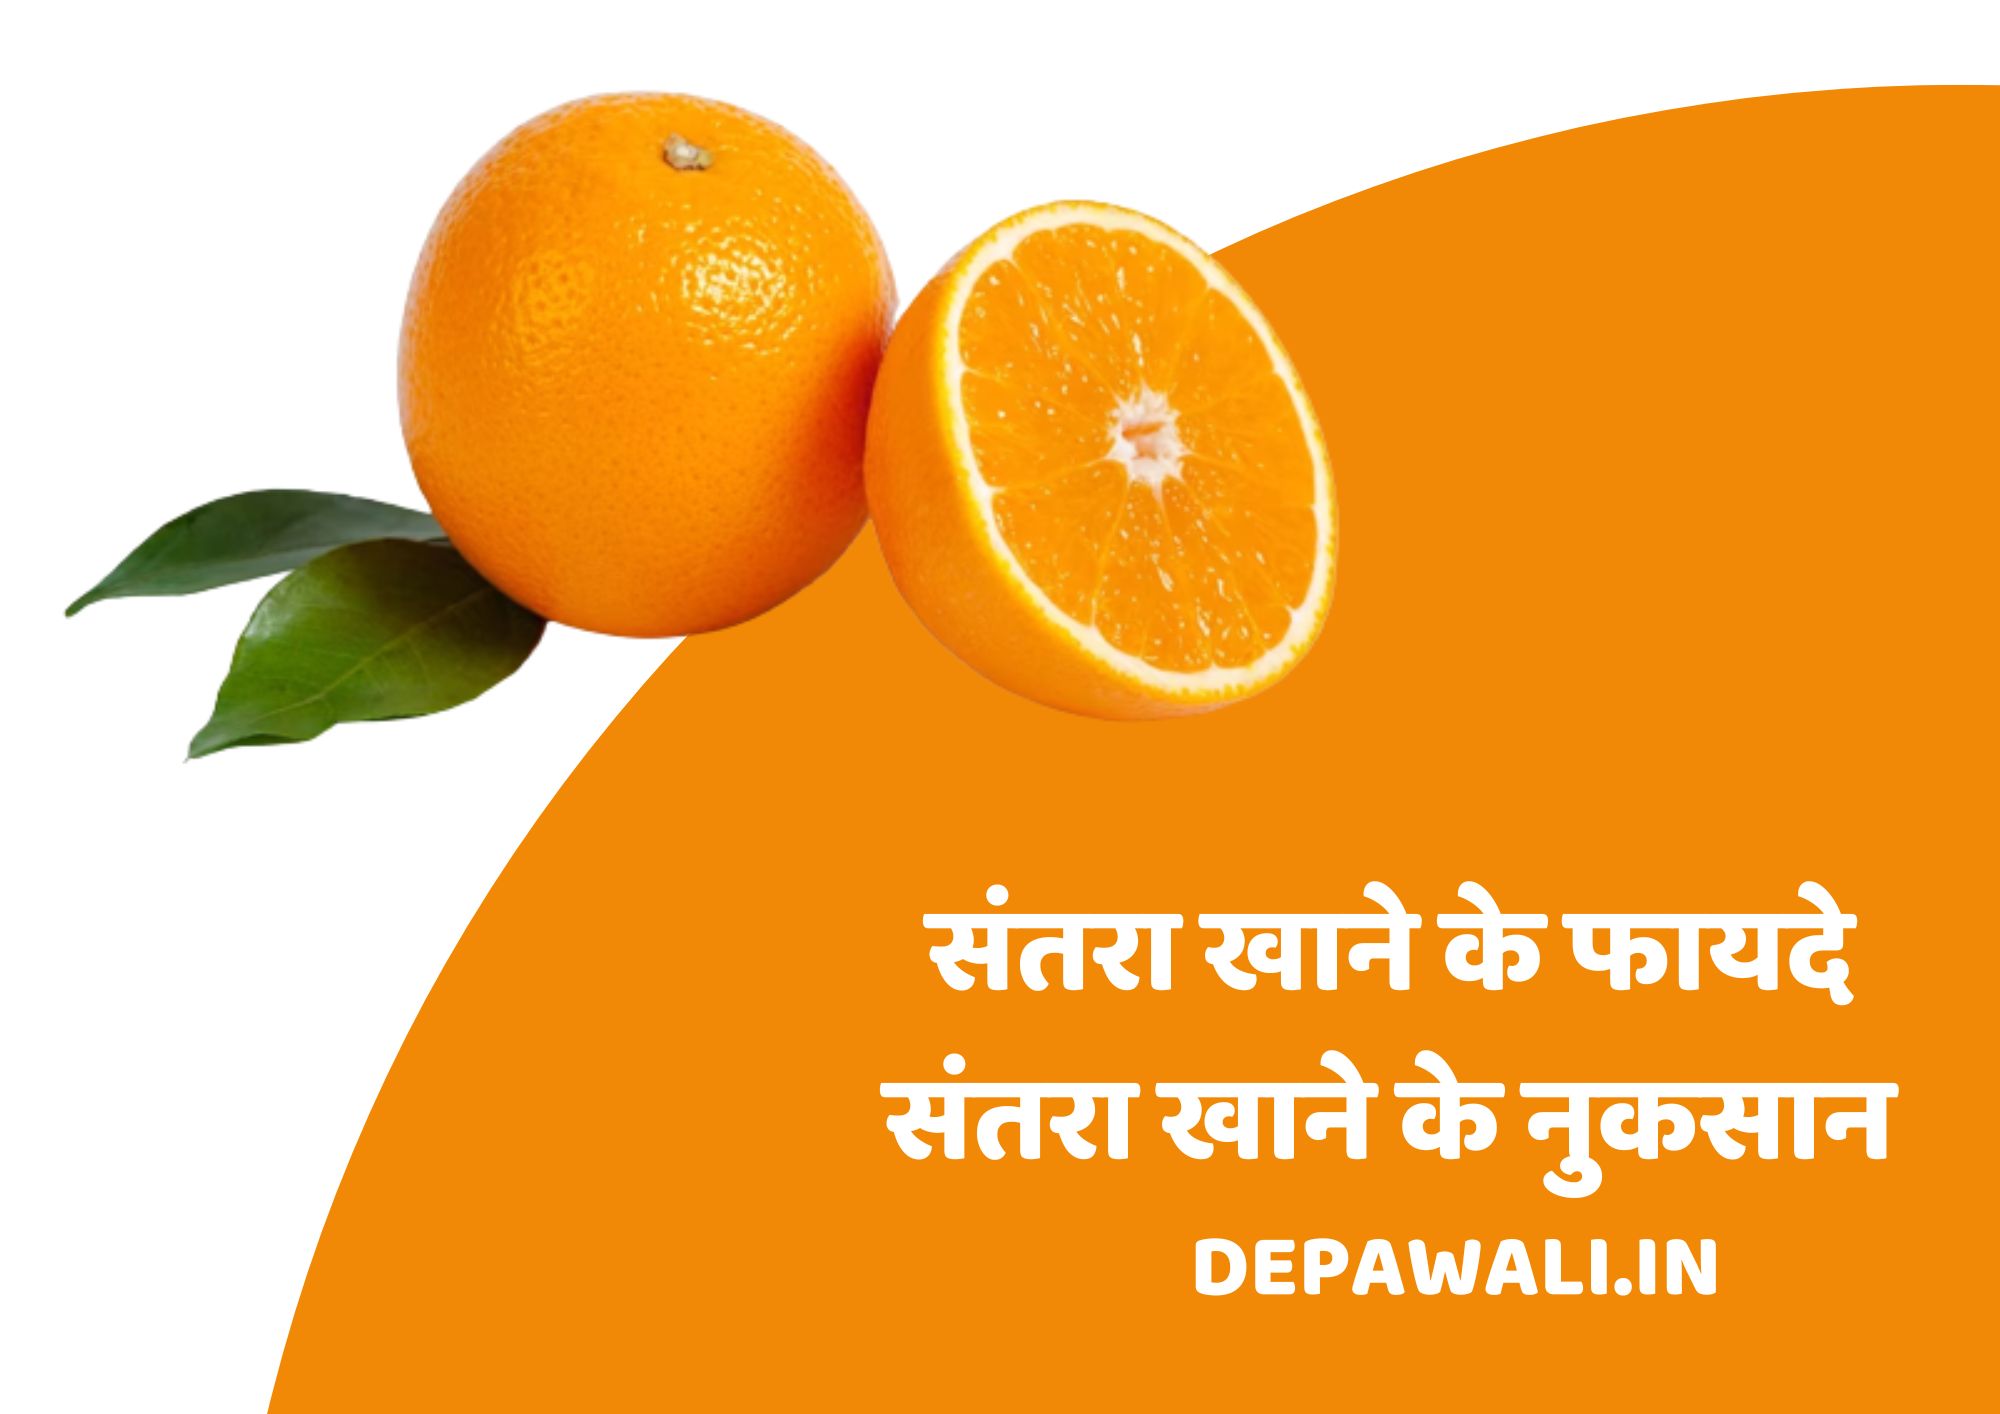 संतरा क्या है, संतरा खाने के फायदे और संतरा खाने के नुकसान - Santhara Kya Hai - What Is Orange In Hindi